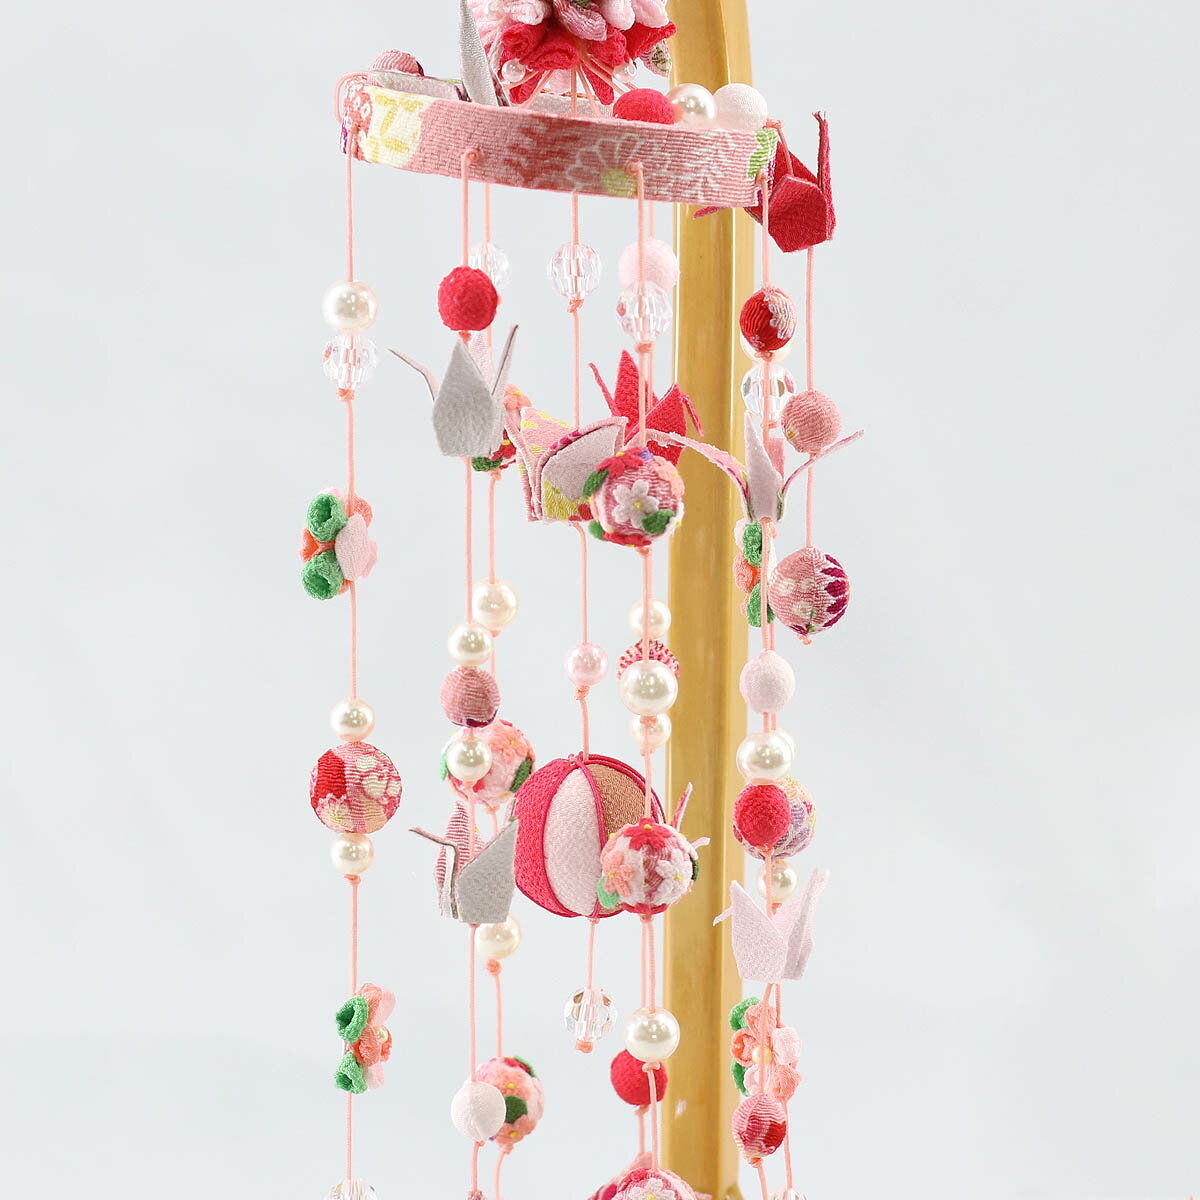 吉徳大光 つるし飾り 折り鶴つるし ピンク スタンド付 TRS-Y-351-055送料無料おしゃれ で かわいい さげもん つるし雛 吊るし飾り で  桃の節句 雛祭り ひな祭り 雛人形 のお祝いに | 人形の丸富